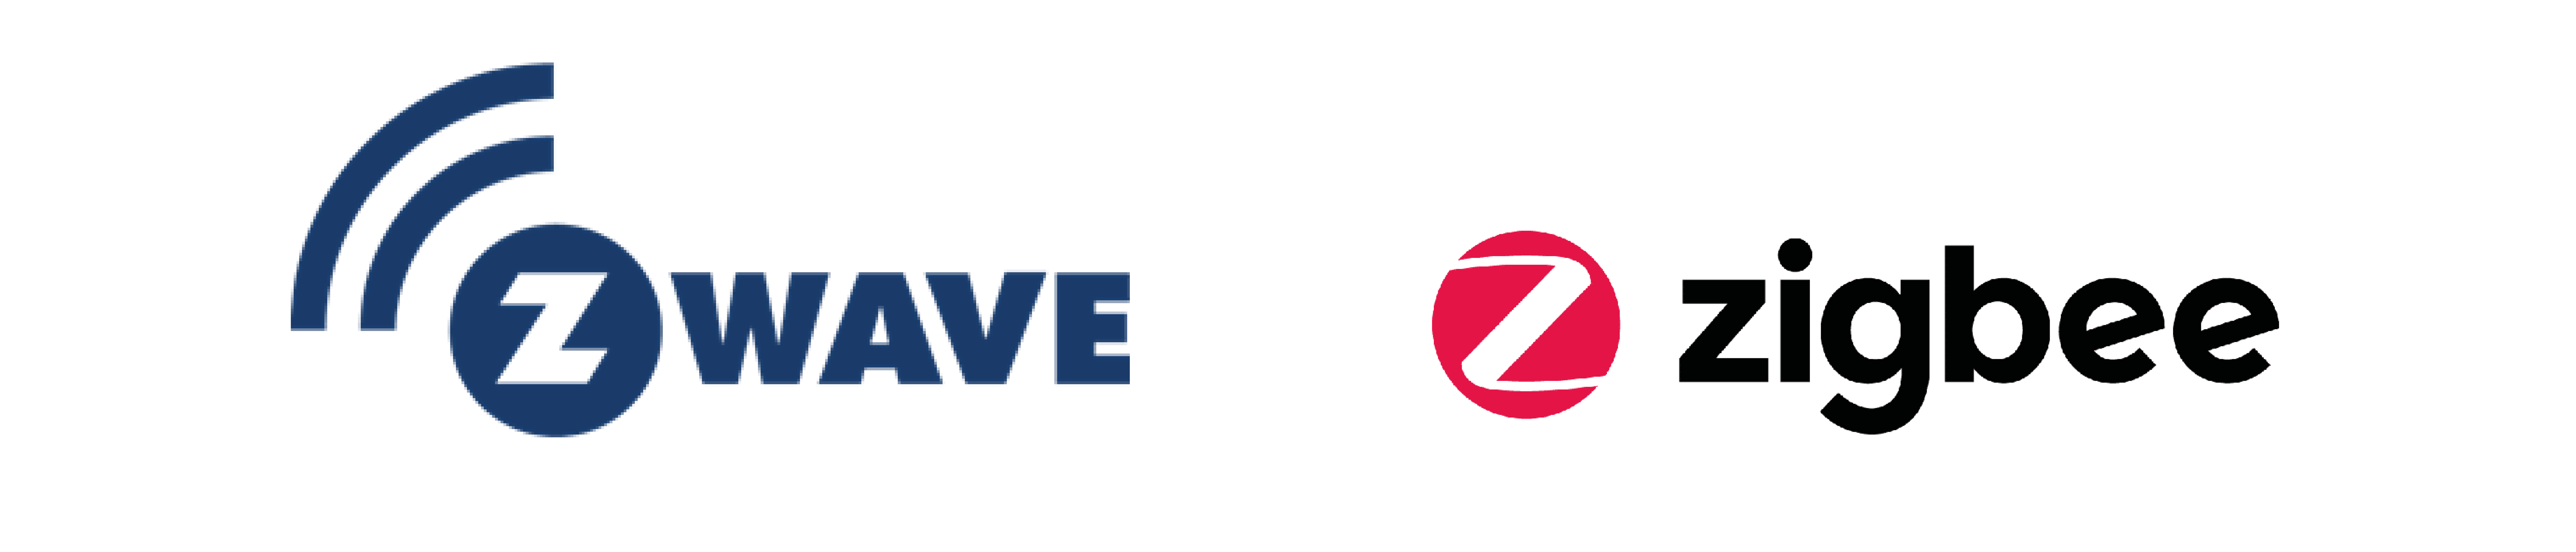 Zigbee_and_Zwave_logos.png